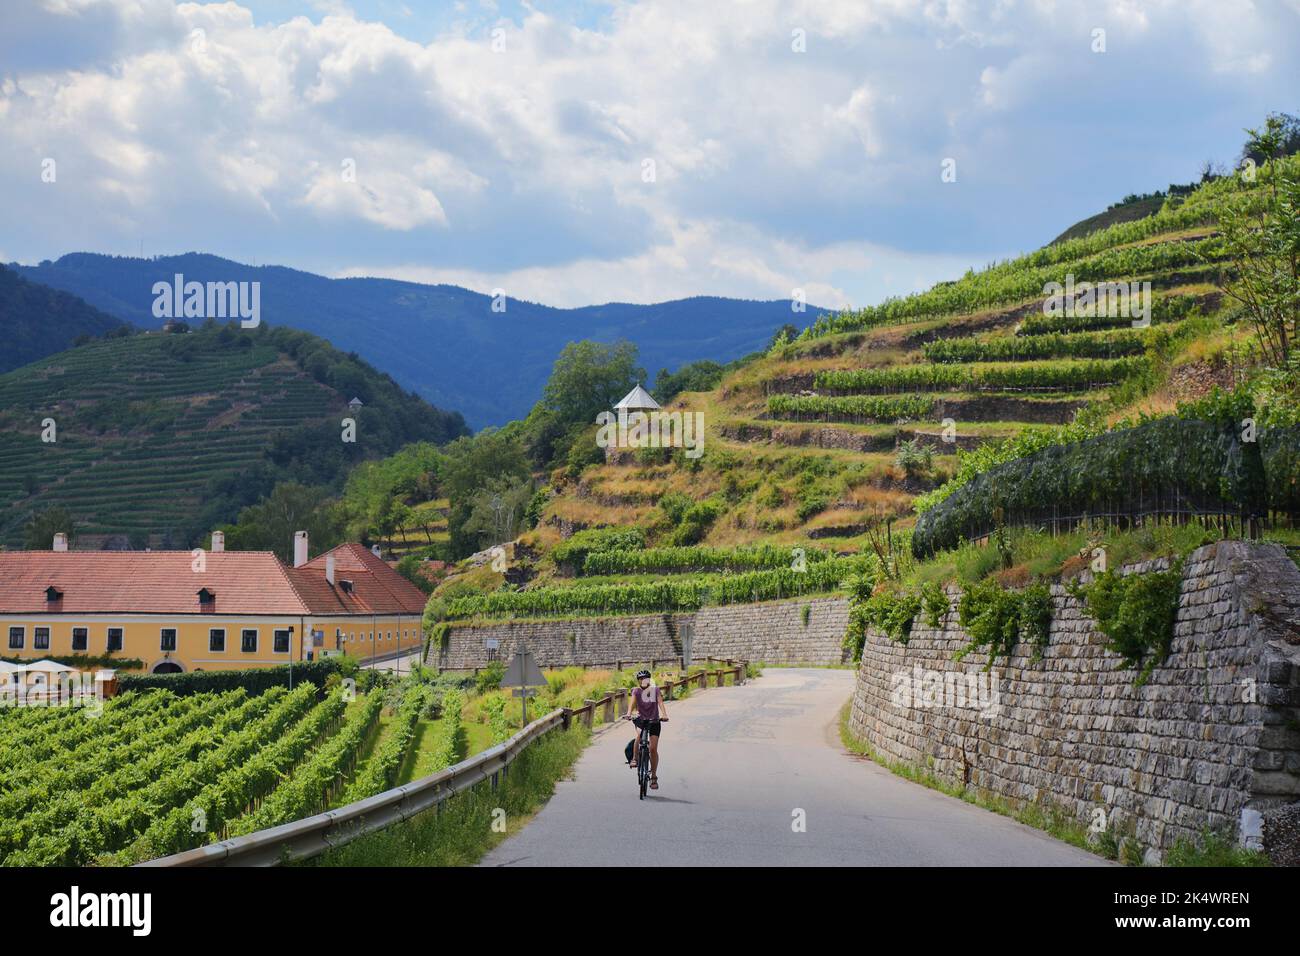 Fahrradtourist zwischen Weinbergen in Österreich Wachau Weinregion. Donauradweg (Donau-Radweg) bei Spitz. Stockfoto